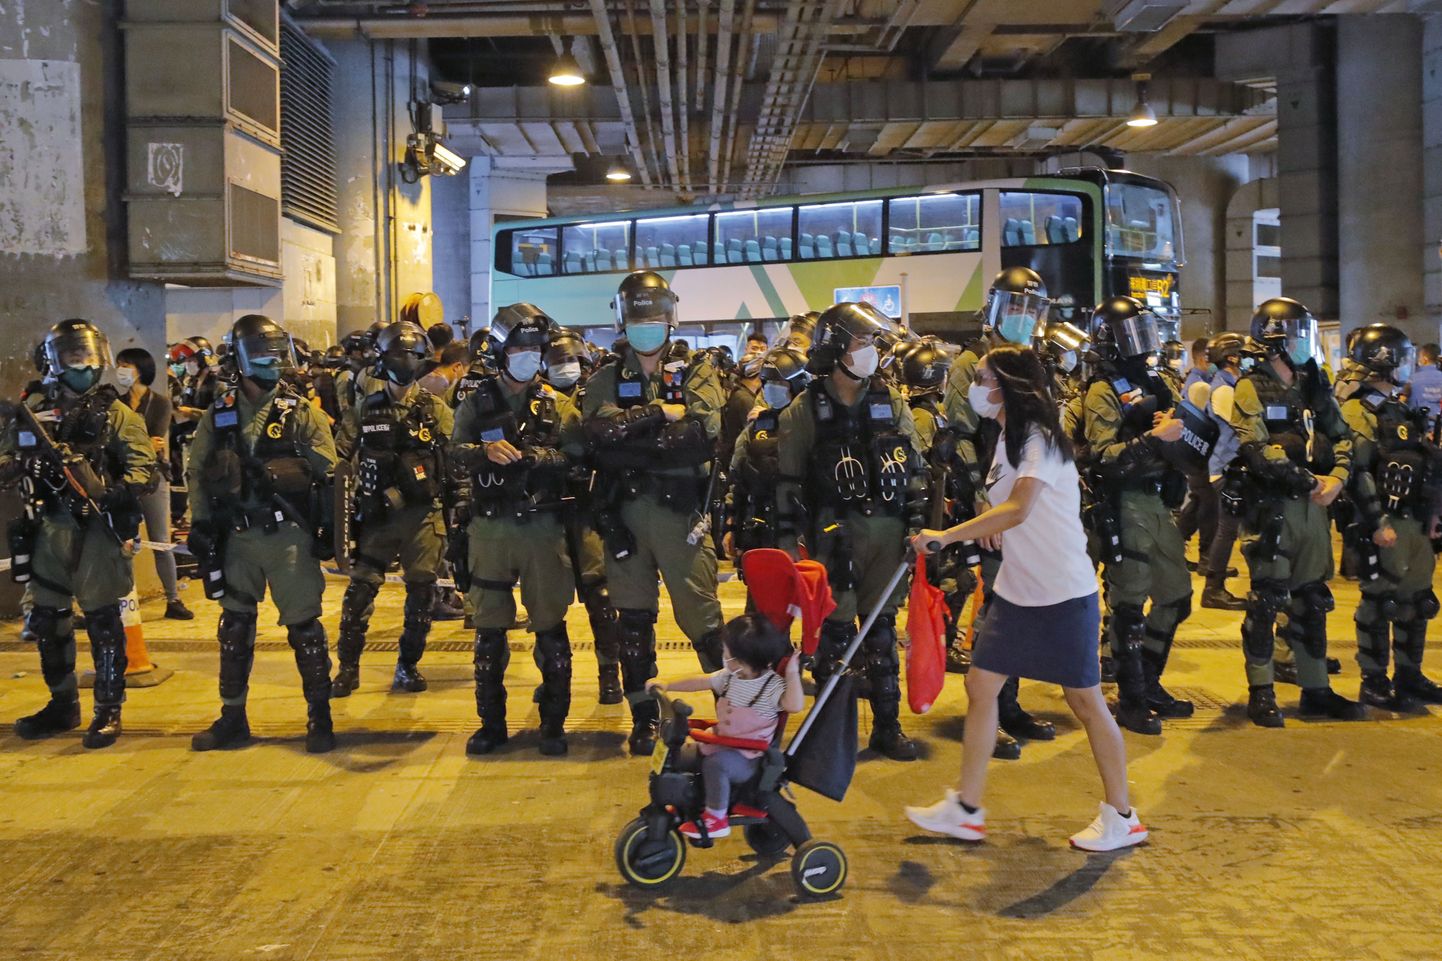 Hongkongi märulipolitsei seismas ostutänaval, kus demokraatiameelsed protestijad tähistasid teisipäeval aasta möödumist Hiina-meelse valitsuse toetajate rünnakust.